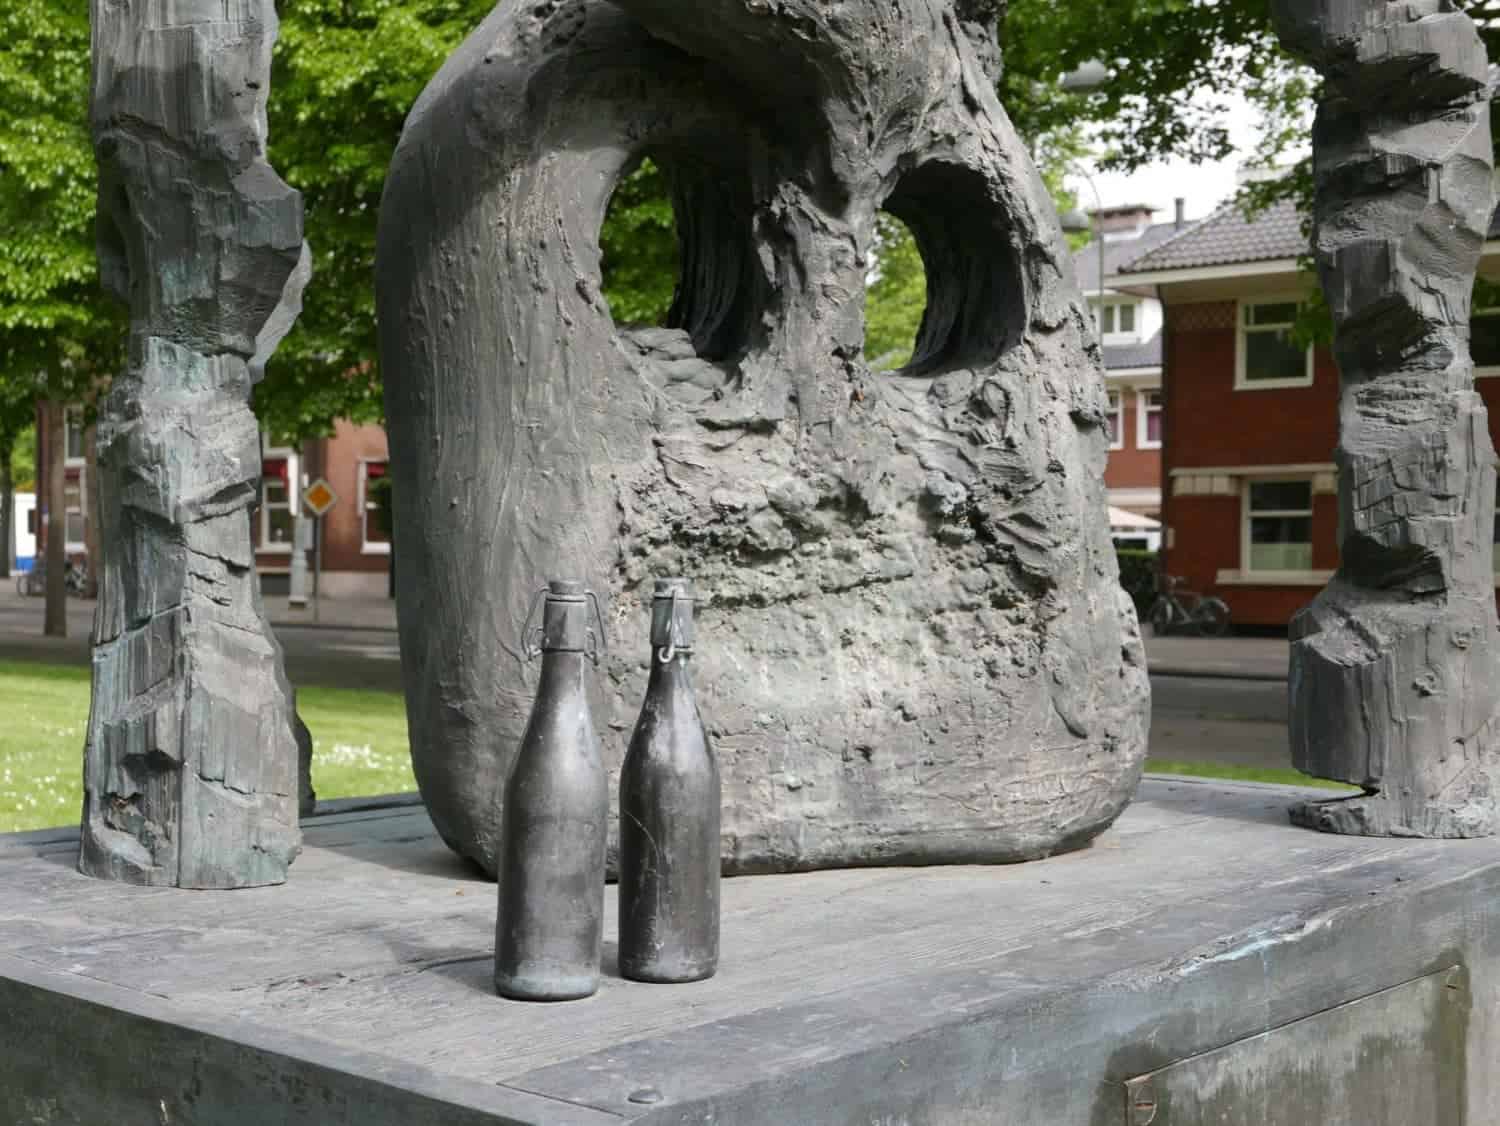 een van de sculpturen die te zien zijn tijdens ArtZuid